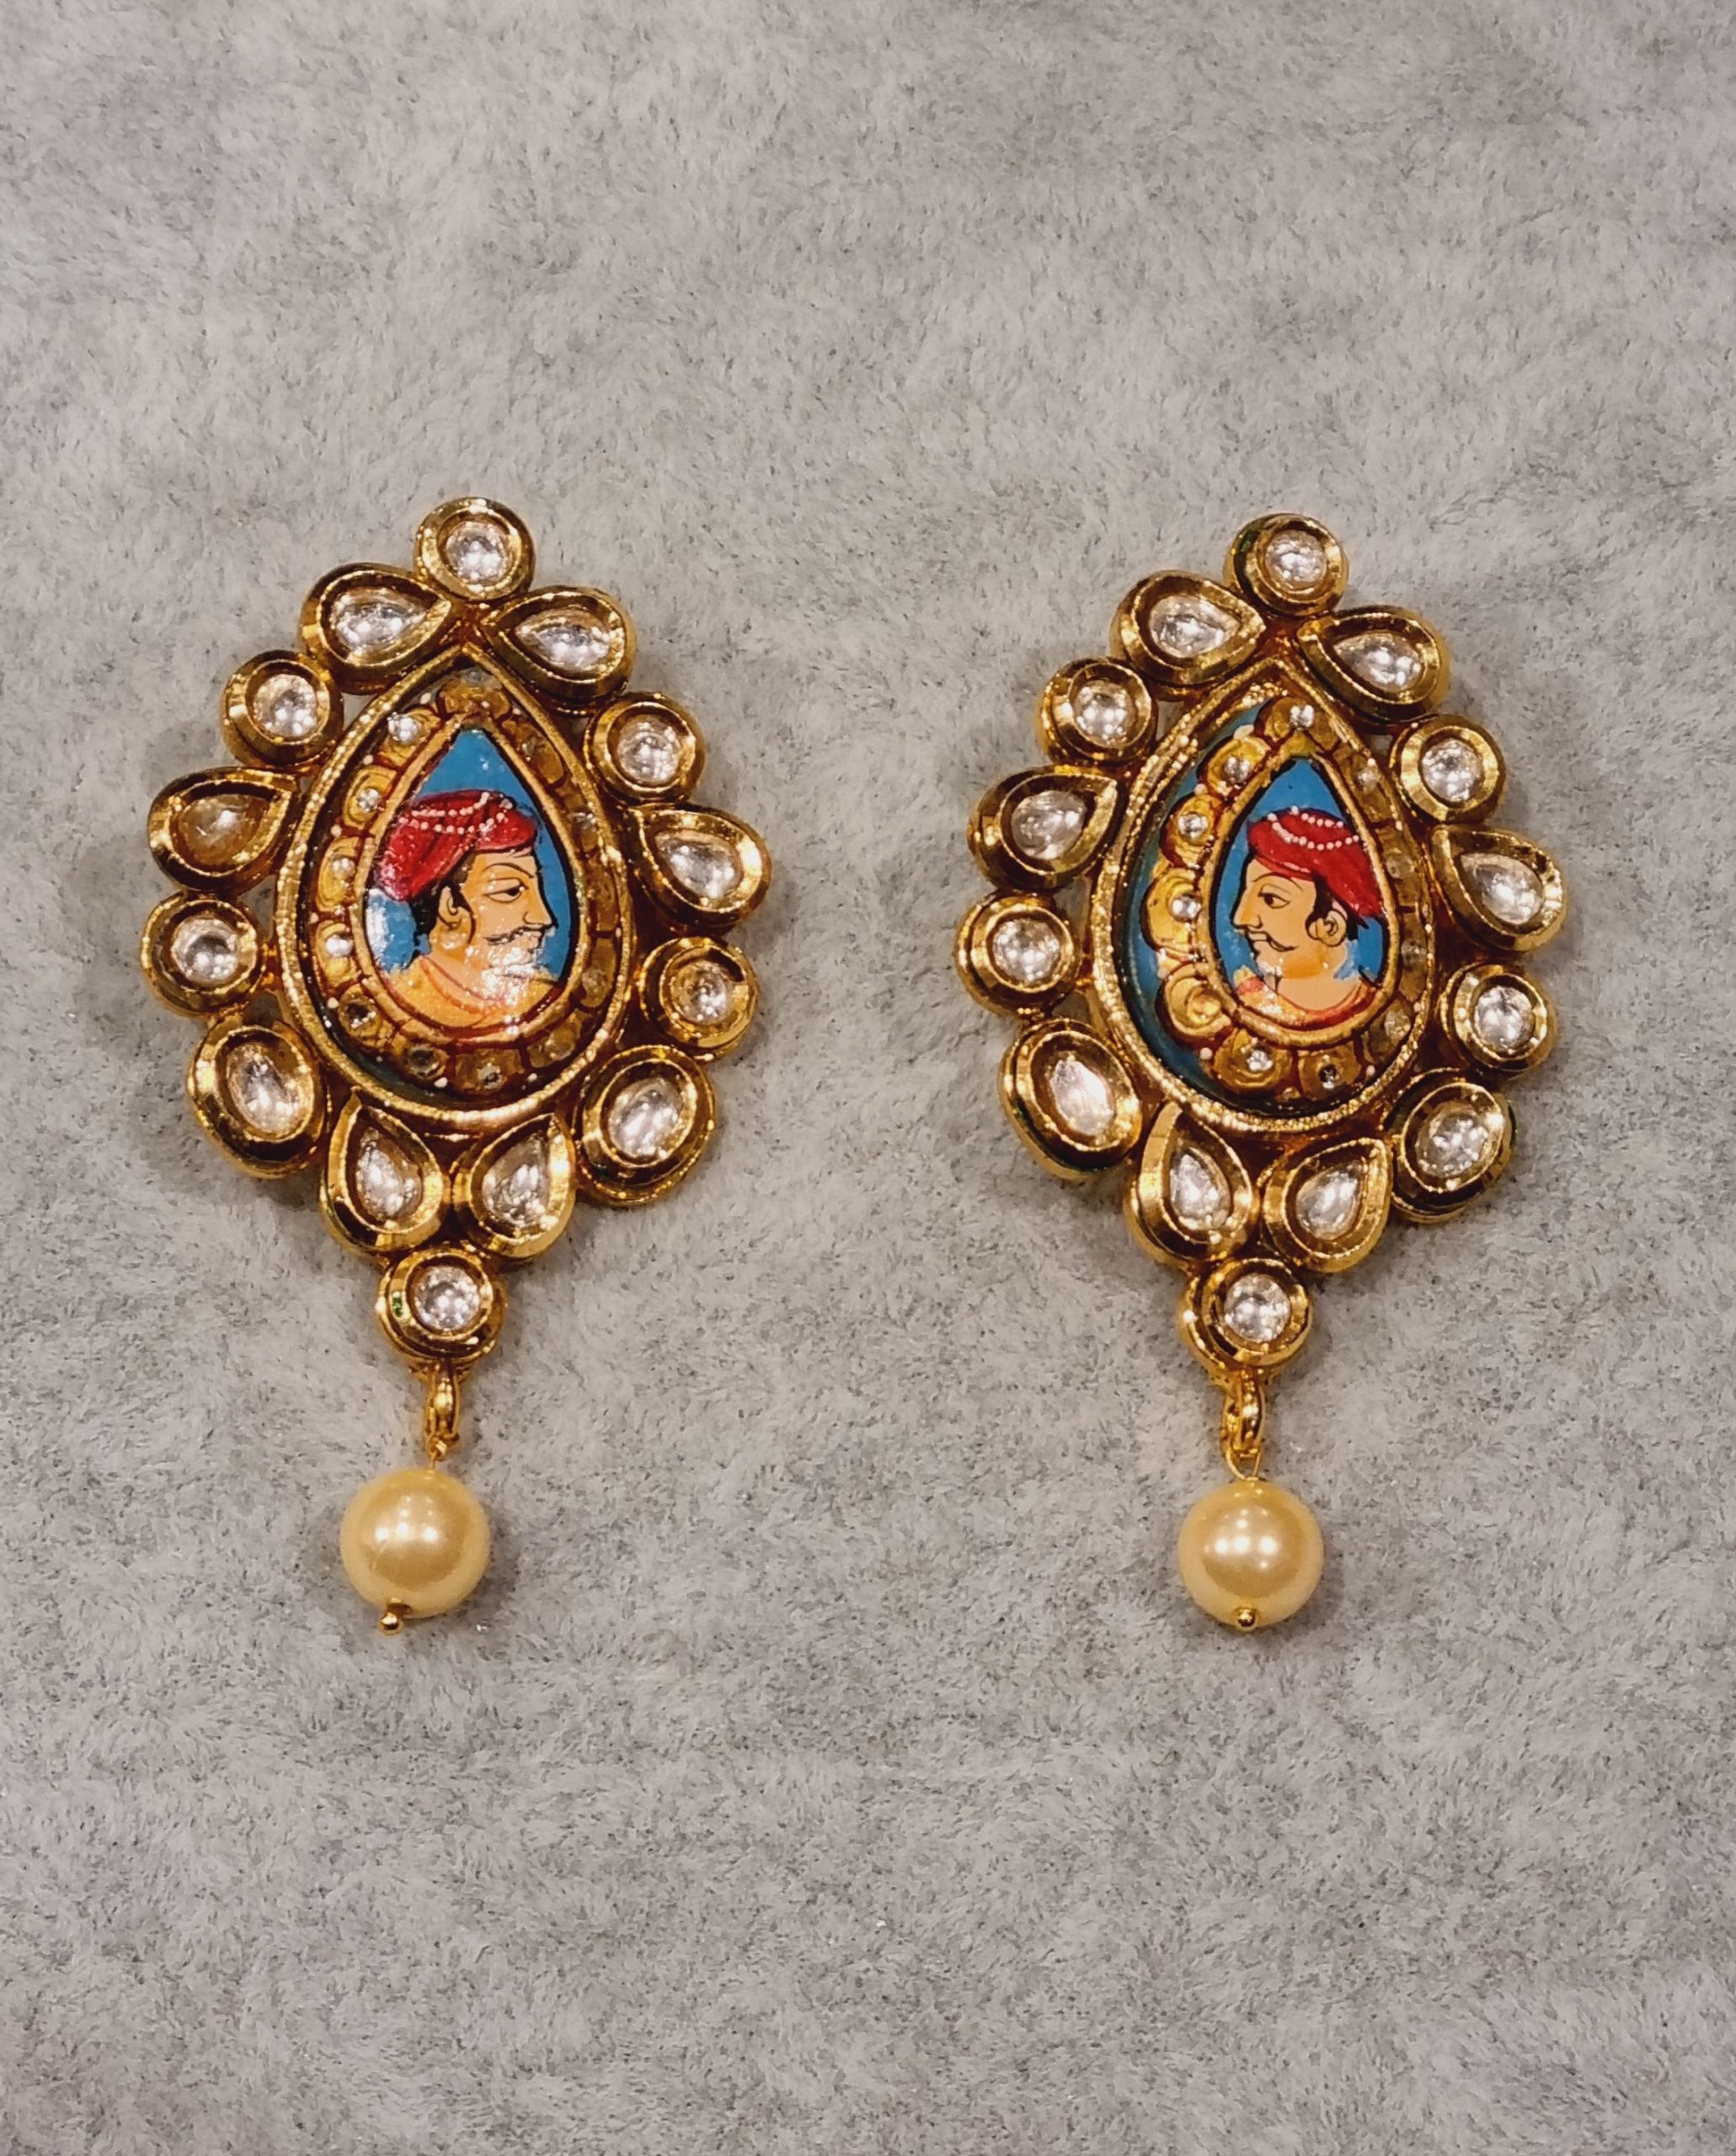 kundan earrings depicting indian maharaja